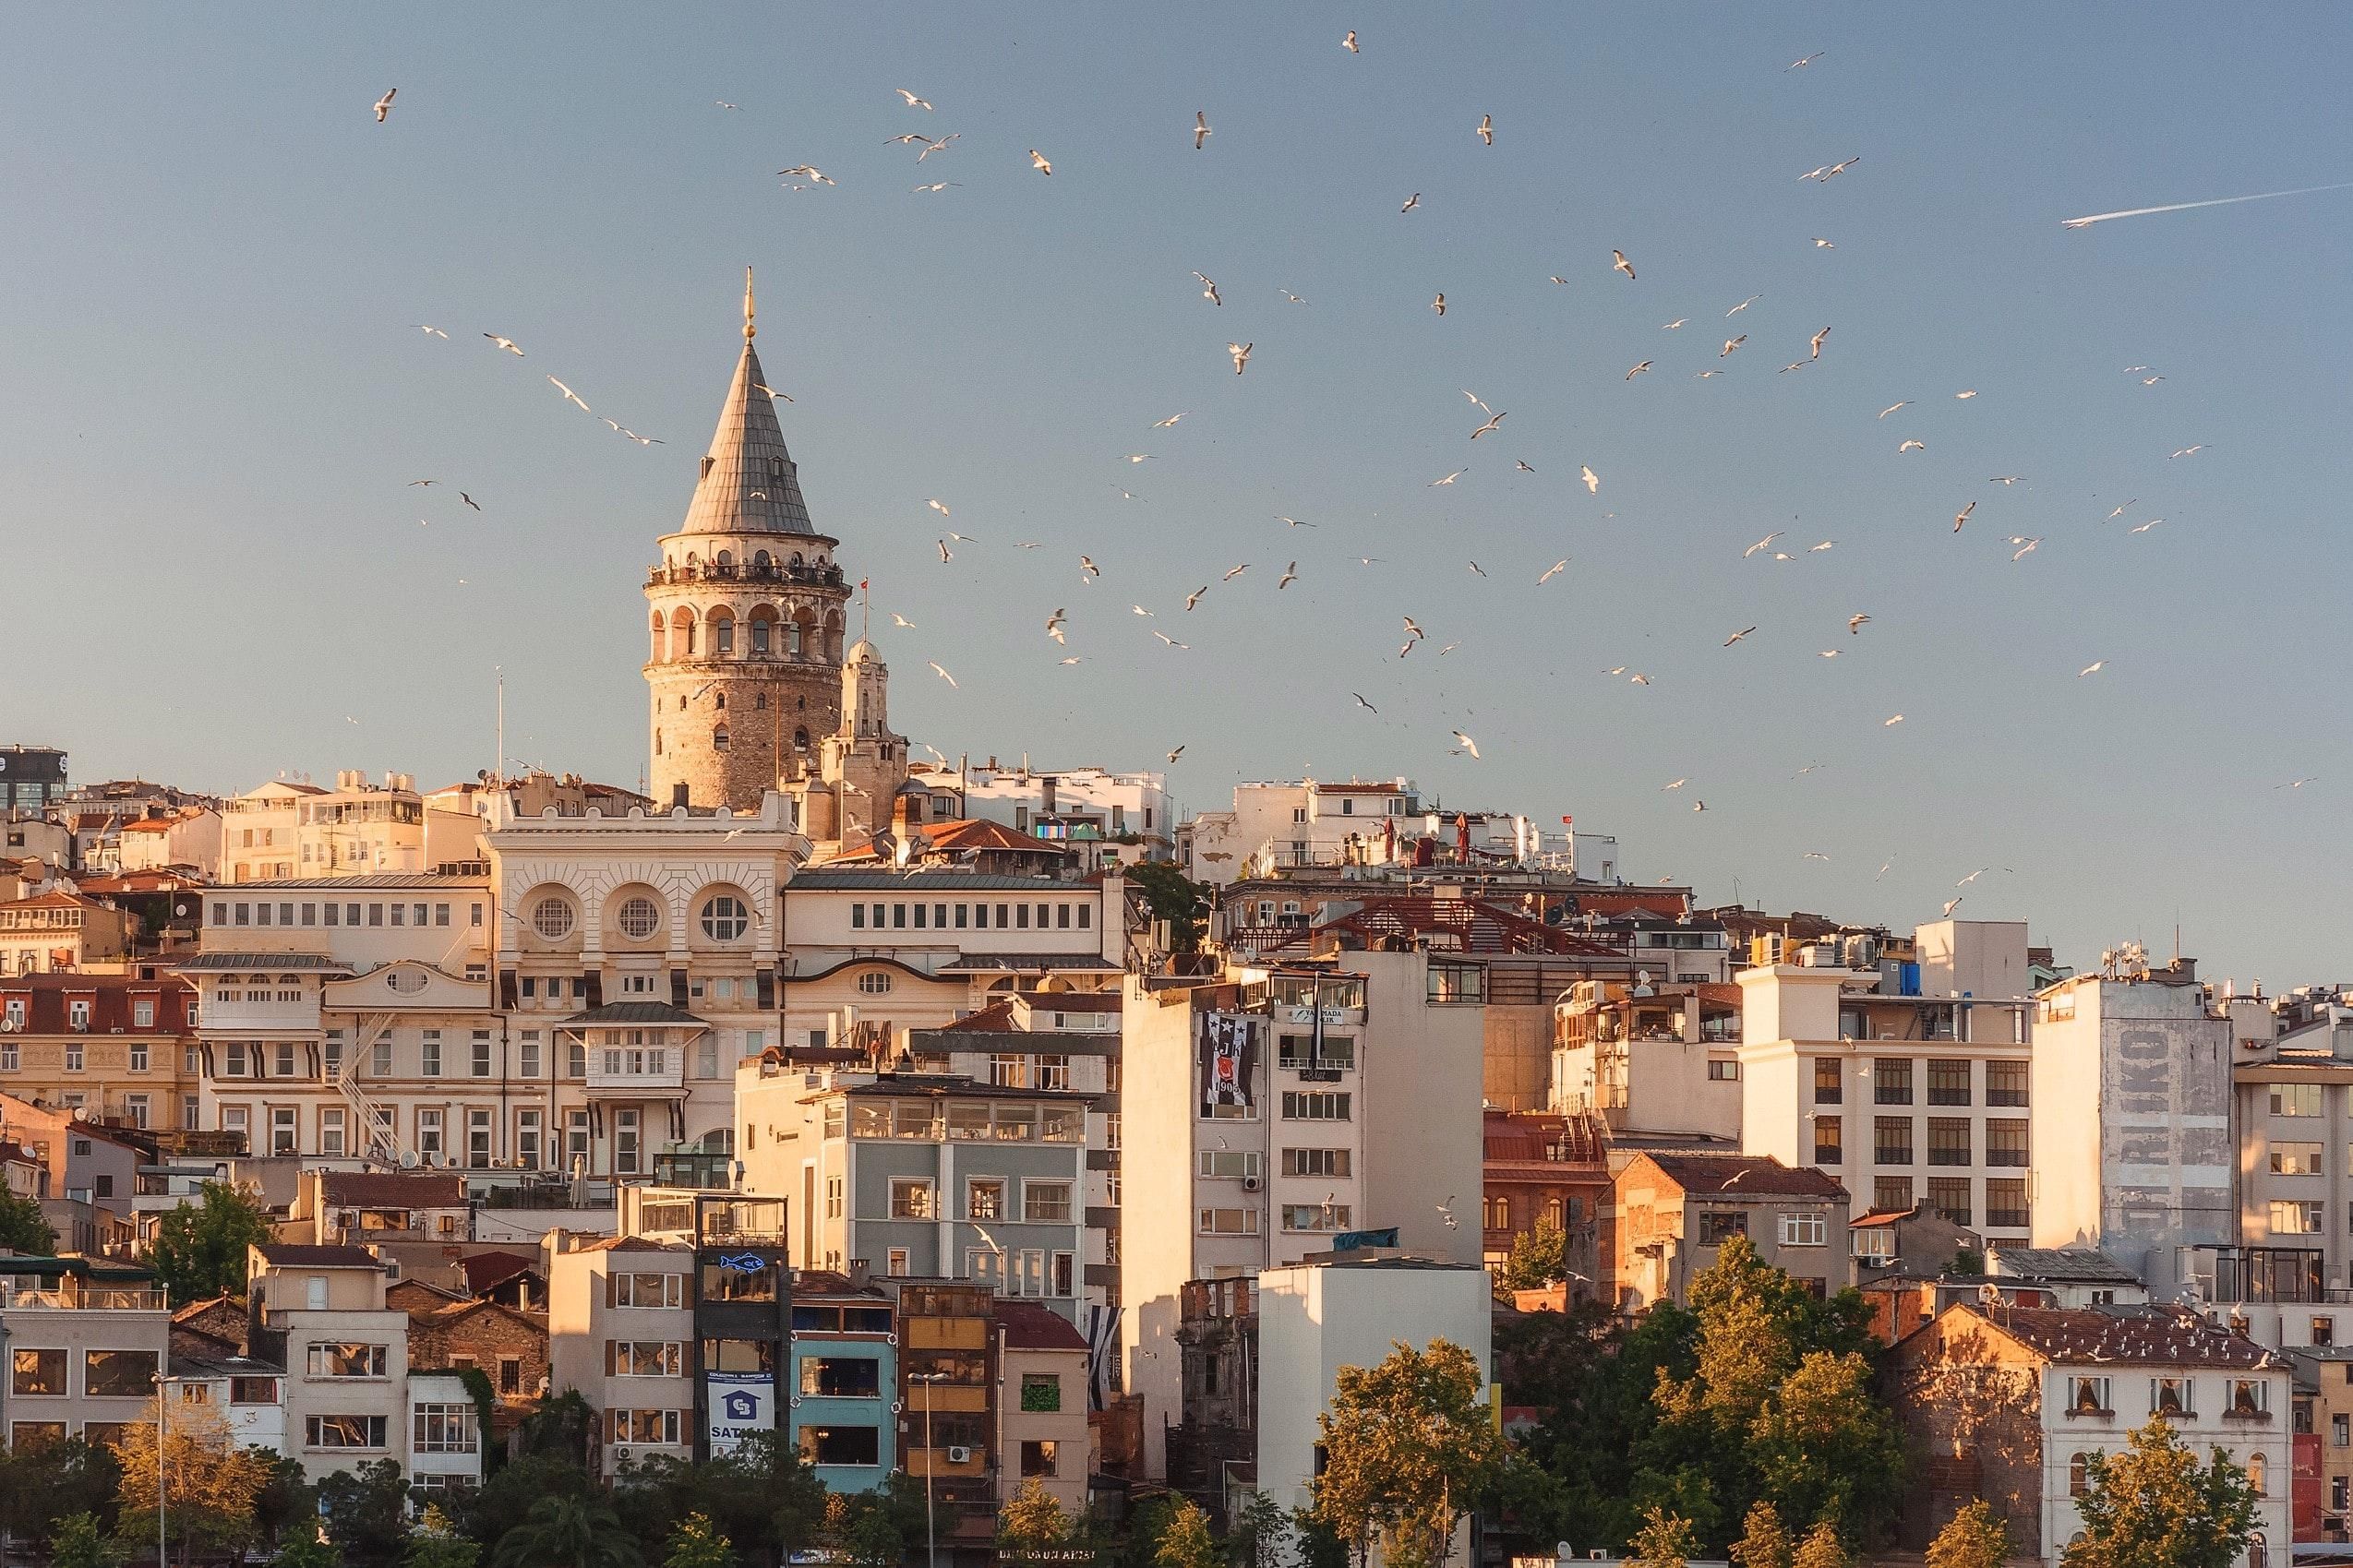  Турагент дала советы, как вести себя в Стамбуле 